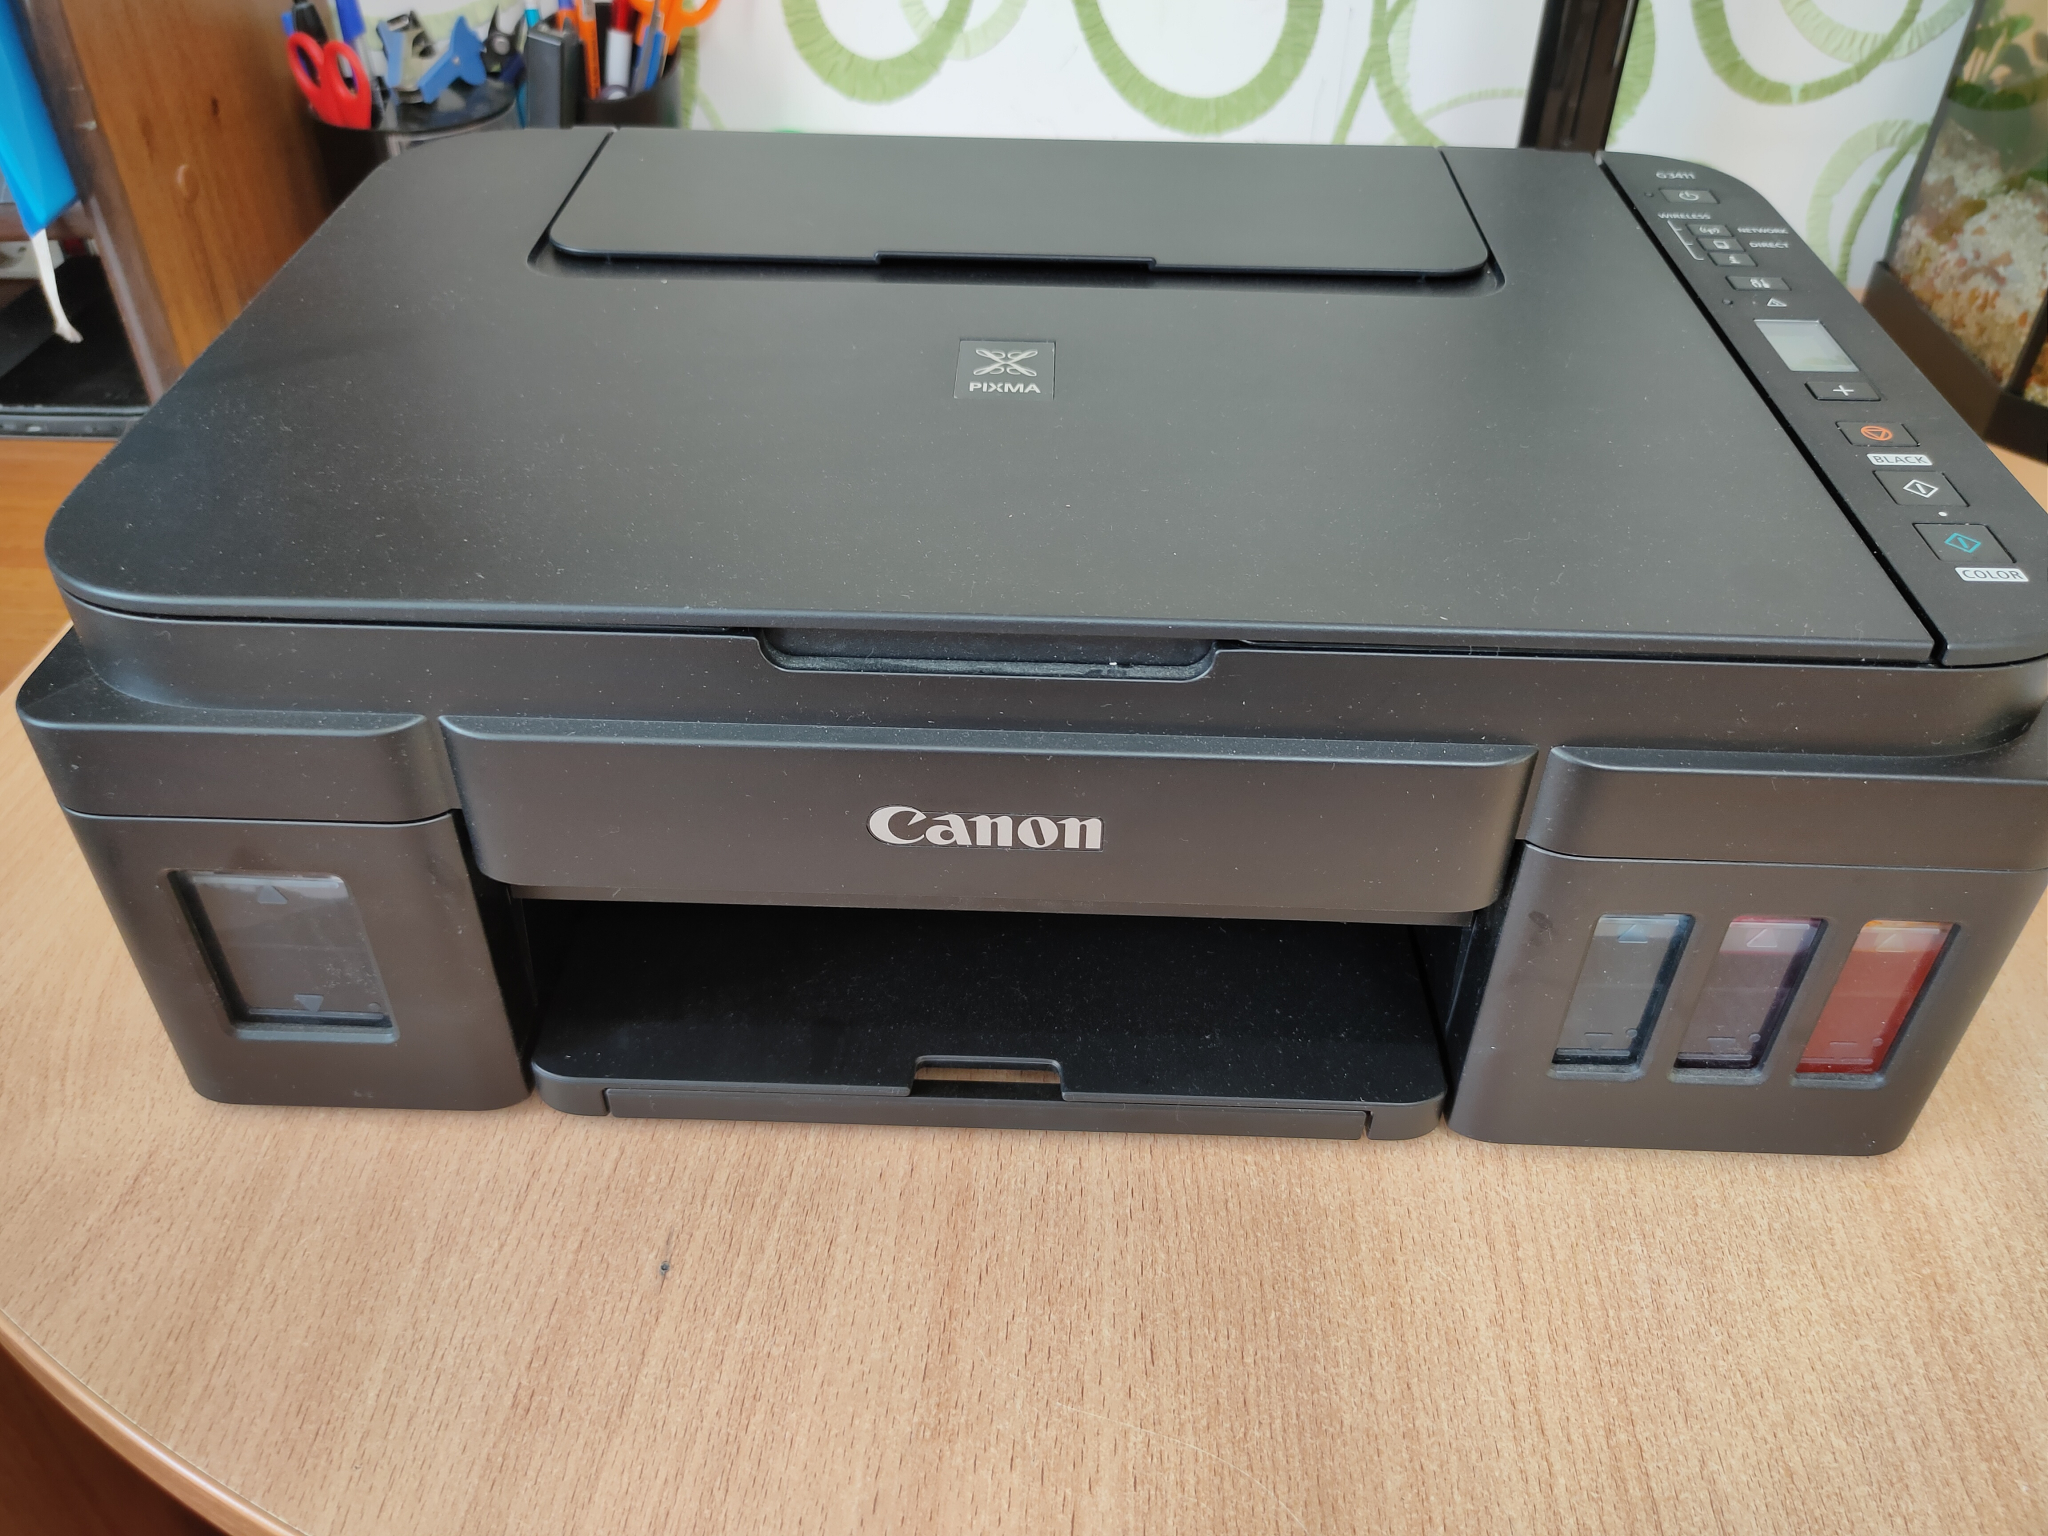 Принтер Canon не печатает после заправки картриджа